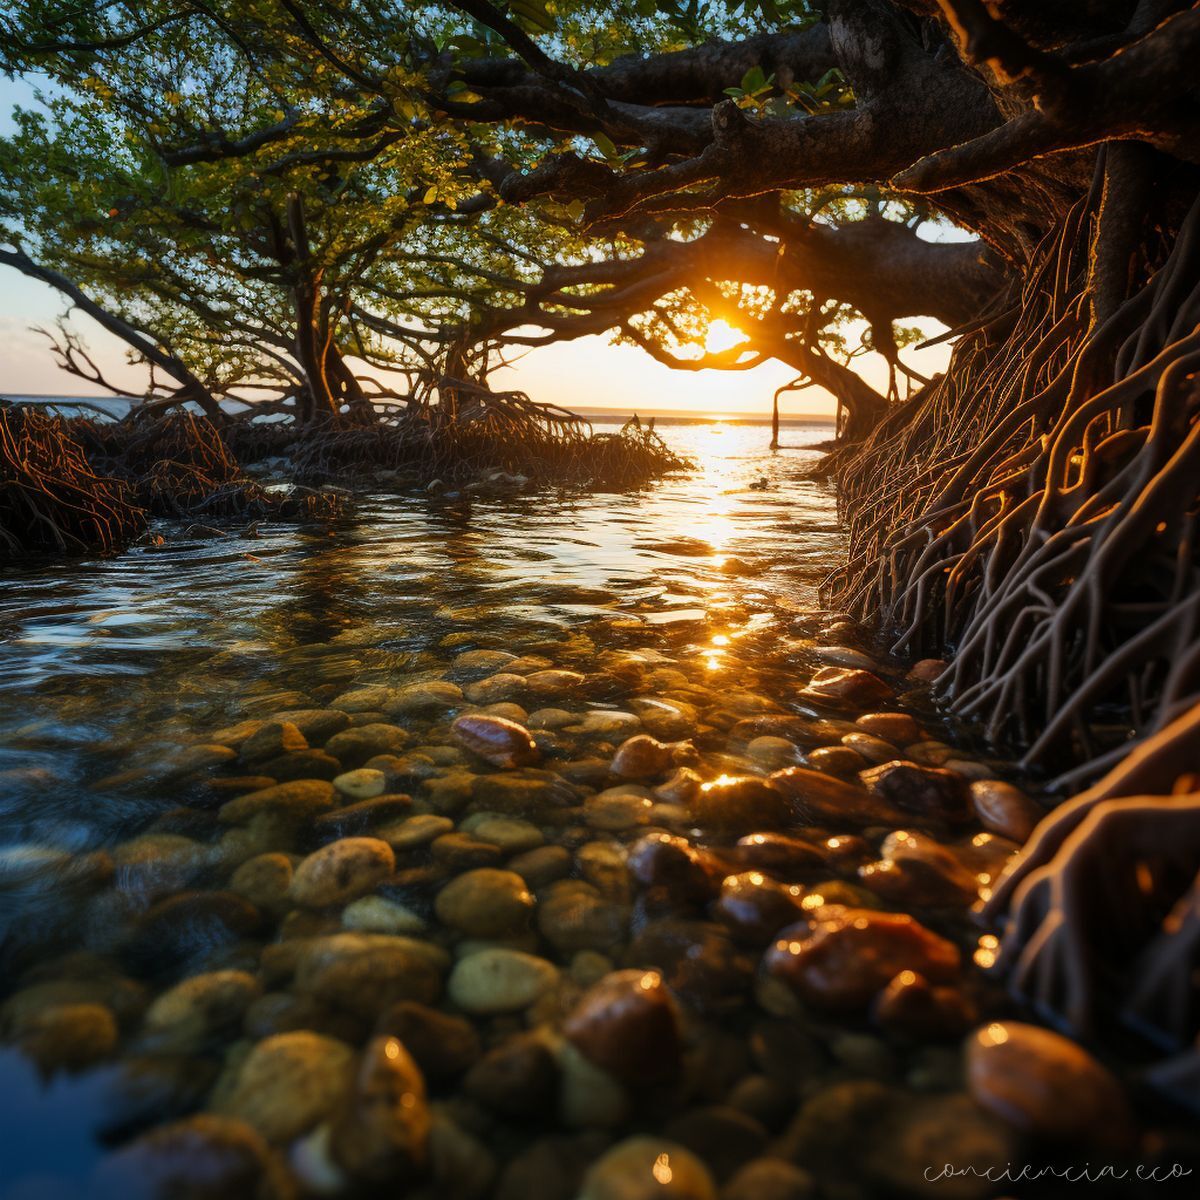 Los manglares protegen nuestras costas de las tormentas y son el hogar de una gran biodiversidad. Son vitales para nuestra supervivencia. #concienciaeco #manglares #inteligenciaambiental #arteconciencia #medioambientesano #arteysostenibilidad #IAparabien #HotTrends